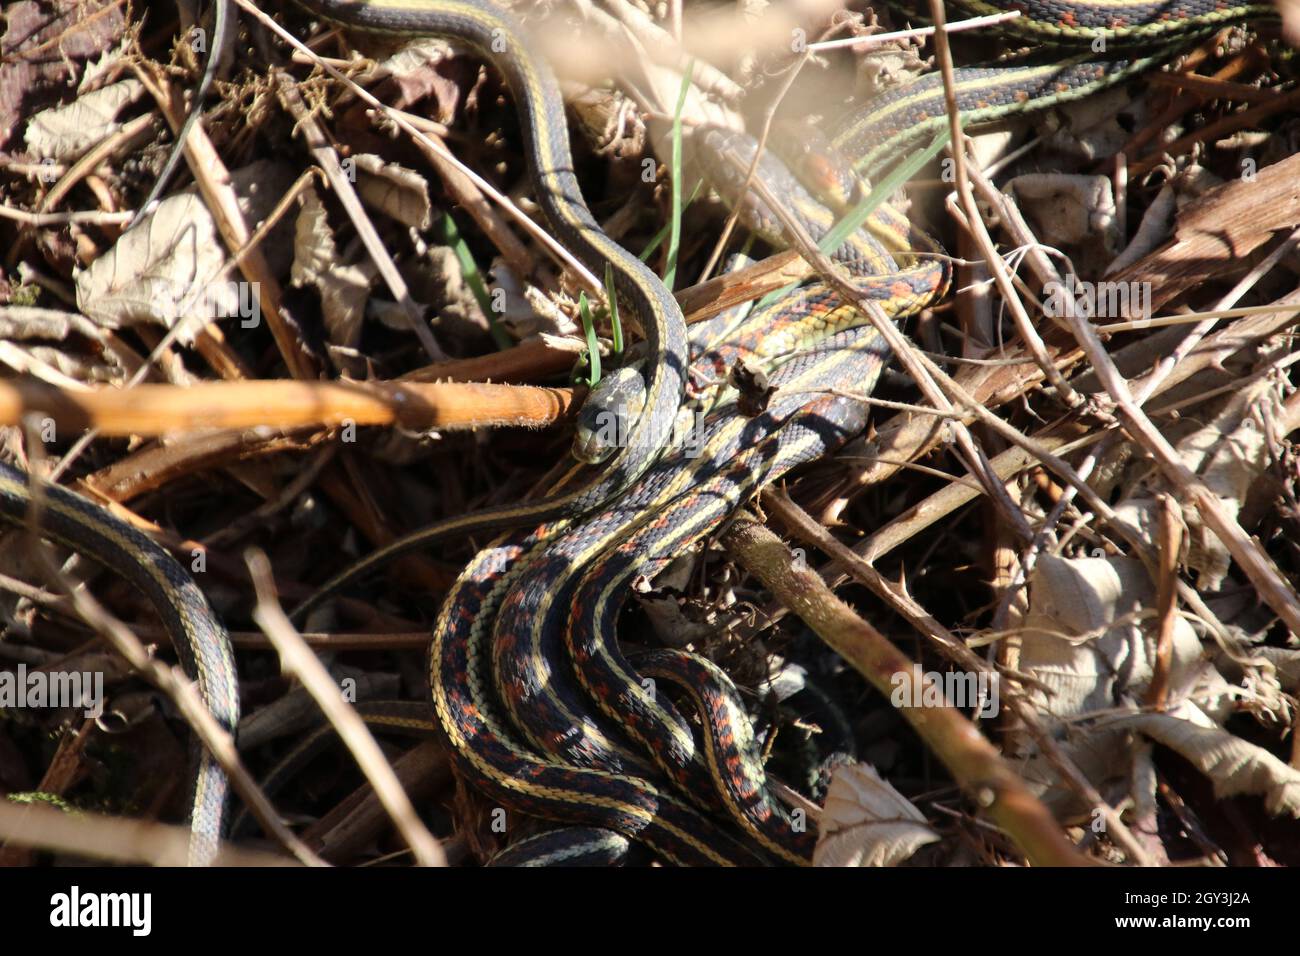 Una serie de serpientes entrelazadas que se ponen sobre hojas muertas, vides y hierba. Foto de stock